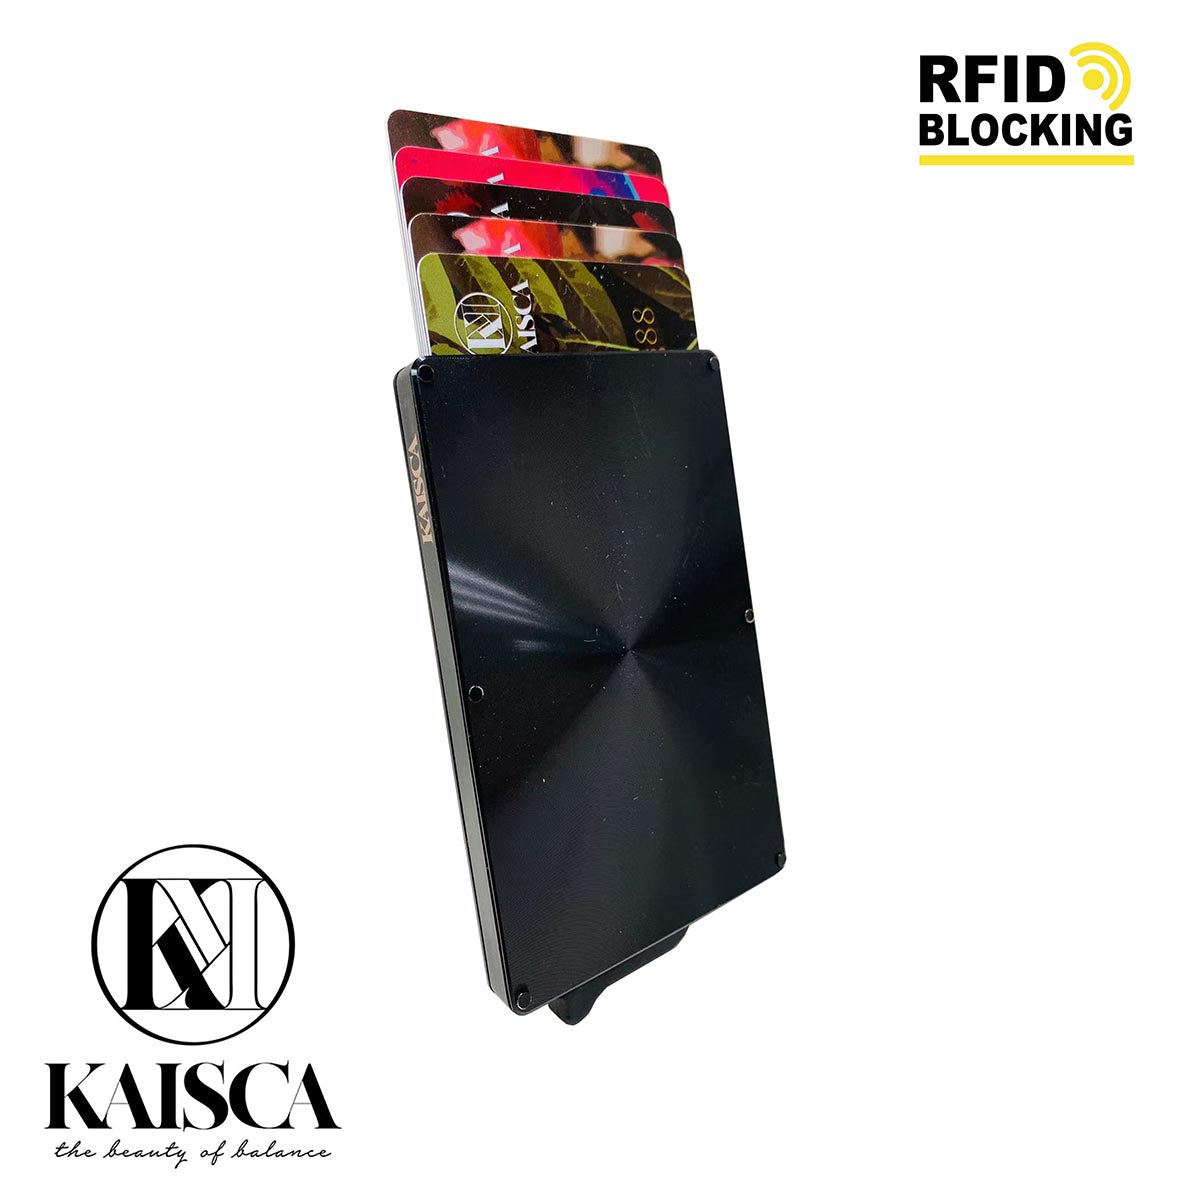 [寄海外] Kaisca - RFID智能防護鋁盒卡套 (CD 藍/CD 灰/CD 黑)